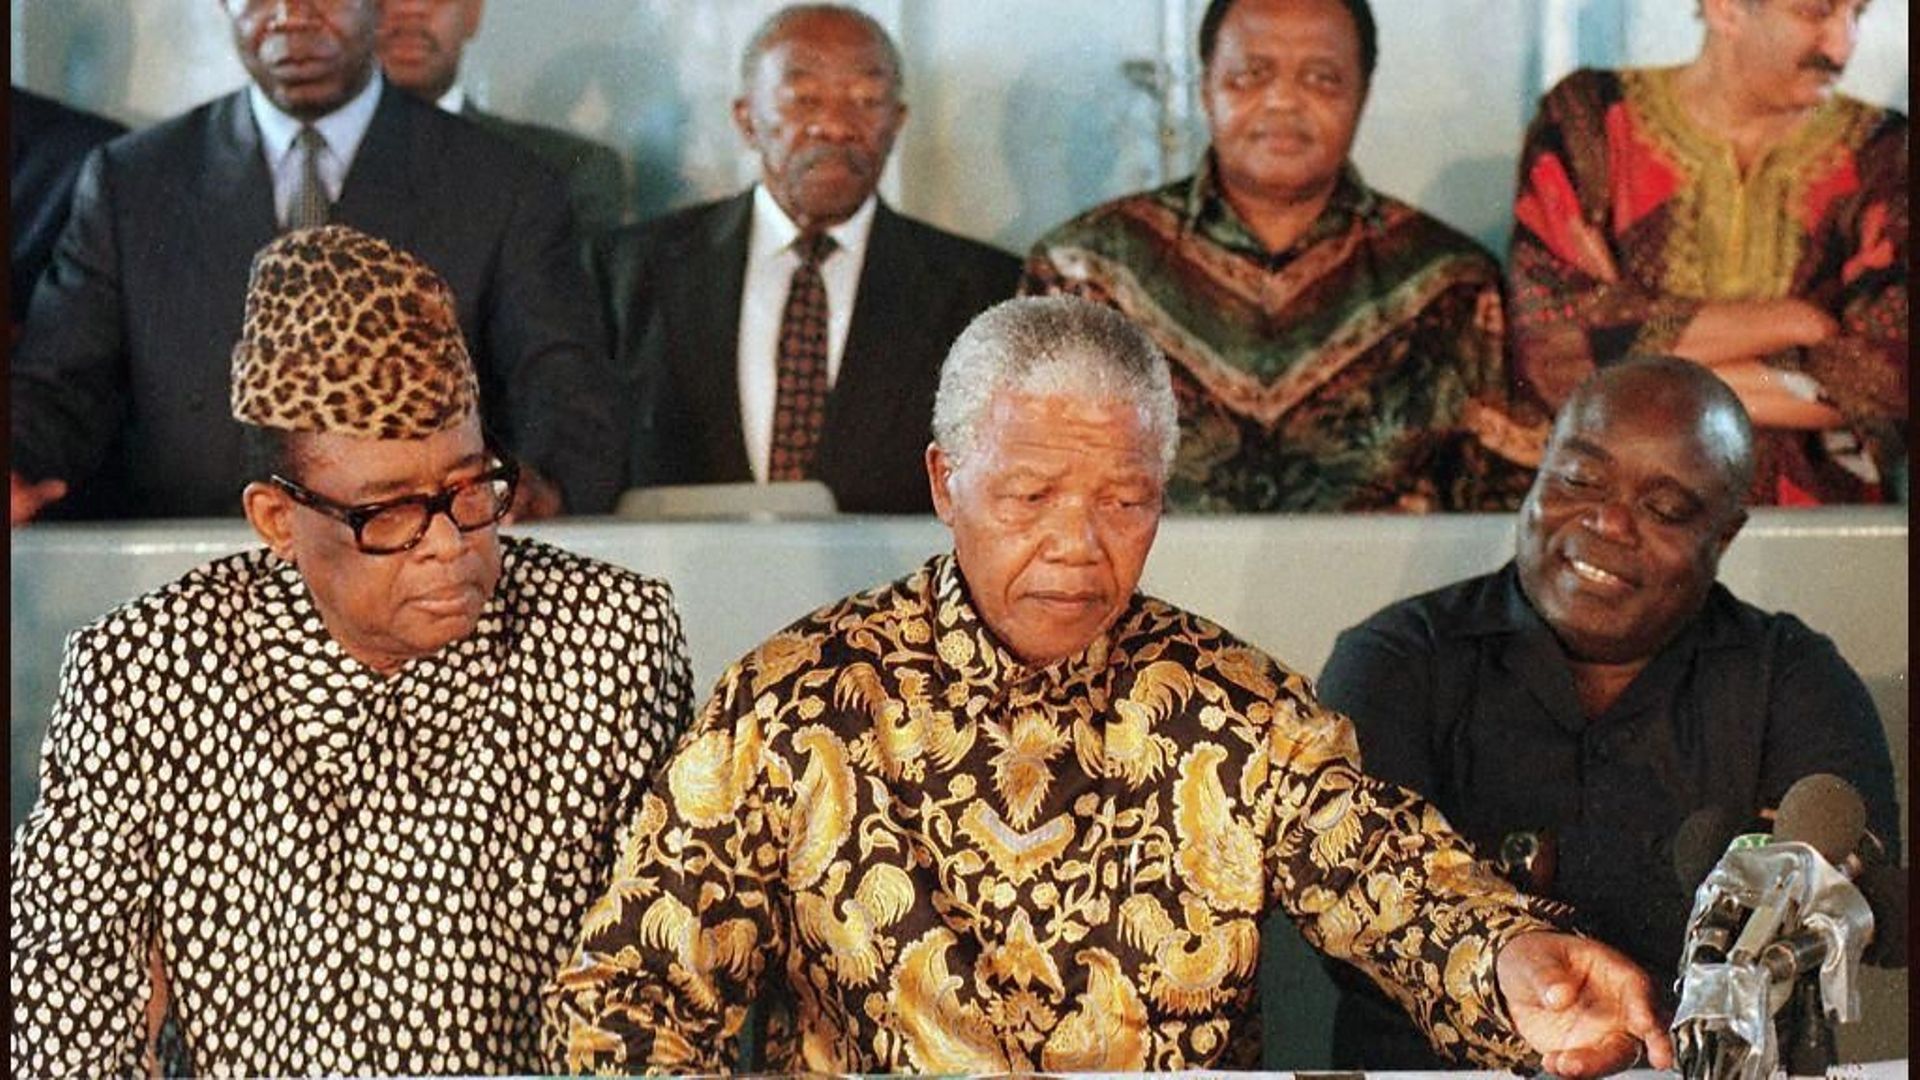 Quelques jours avant sa chute, Mobutu négocie avec Laurent Désiré Kabila sous le patronage de Nelson Mandela.